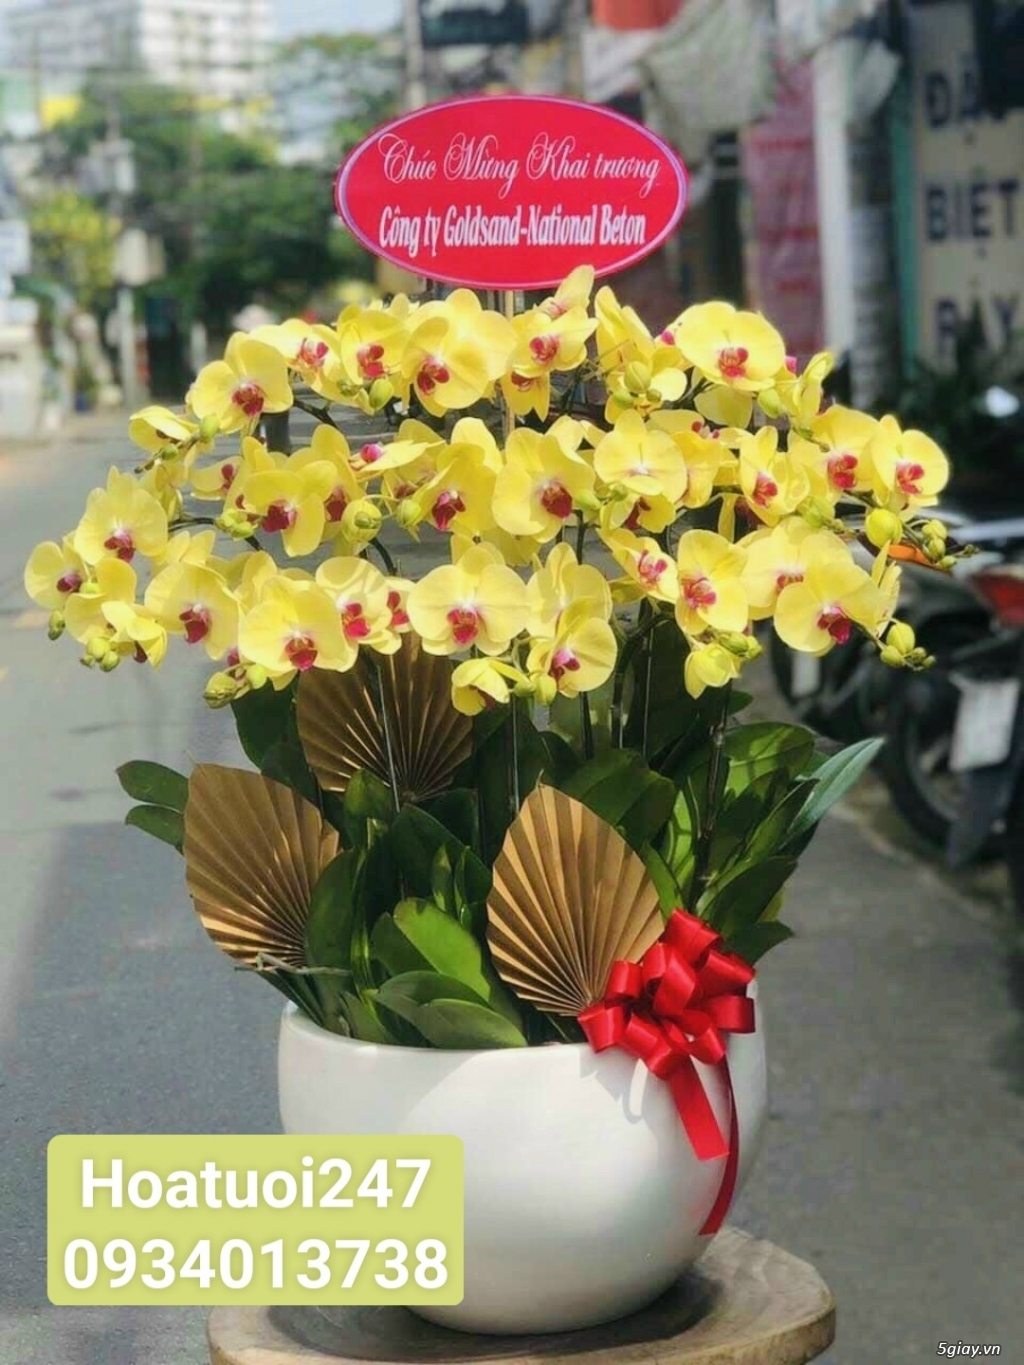 Cửa hàng Hoa Sài Gòn 247 là địa điểm đặt hoa uy tín nhất Sài Gòn - 11